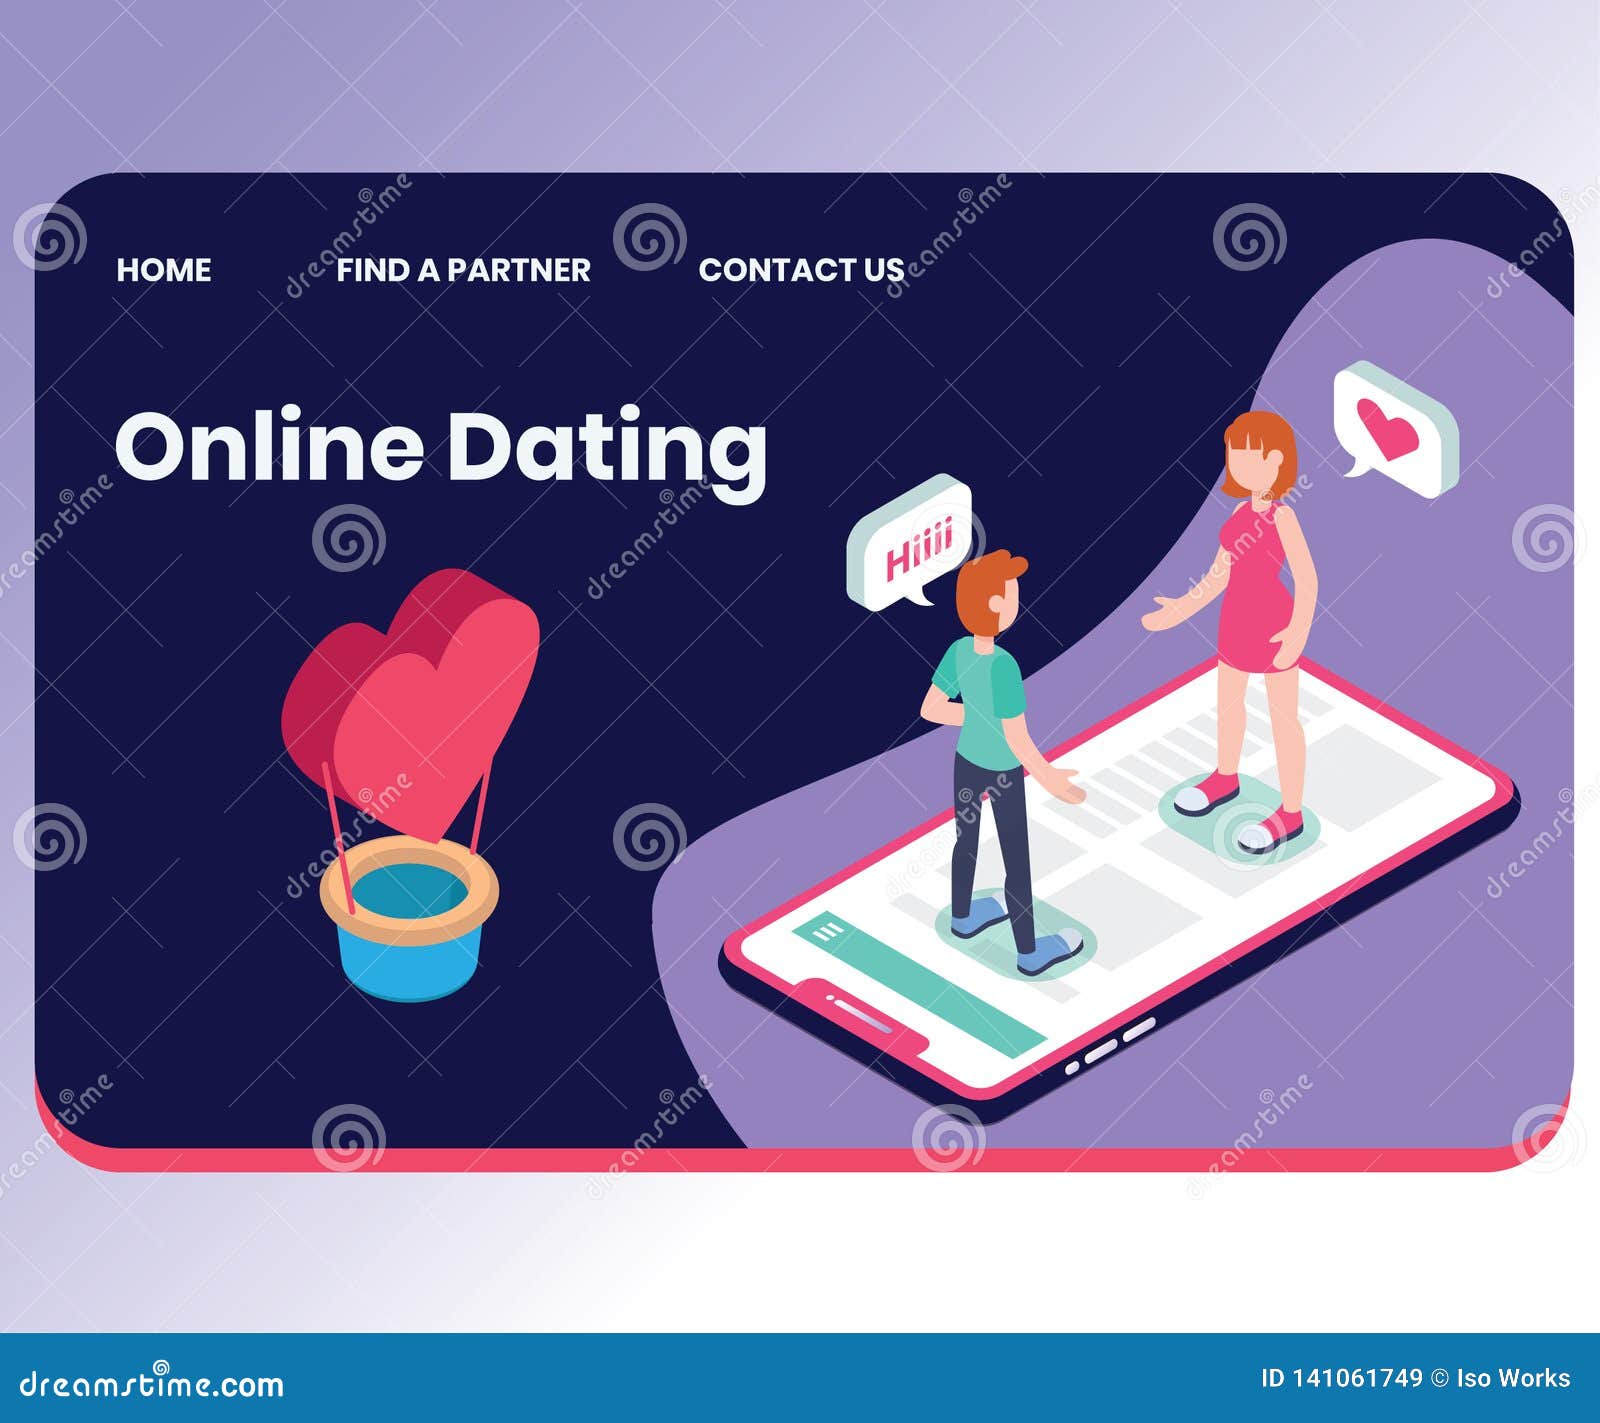 welche online dating plattform